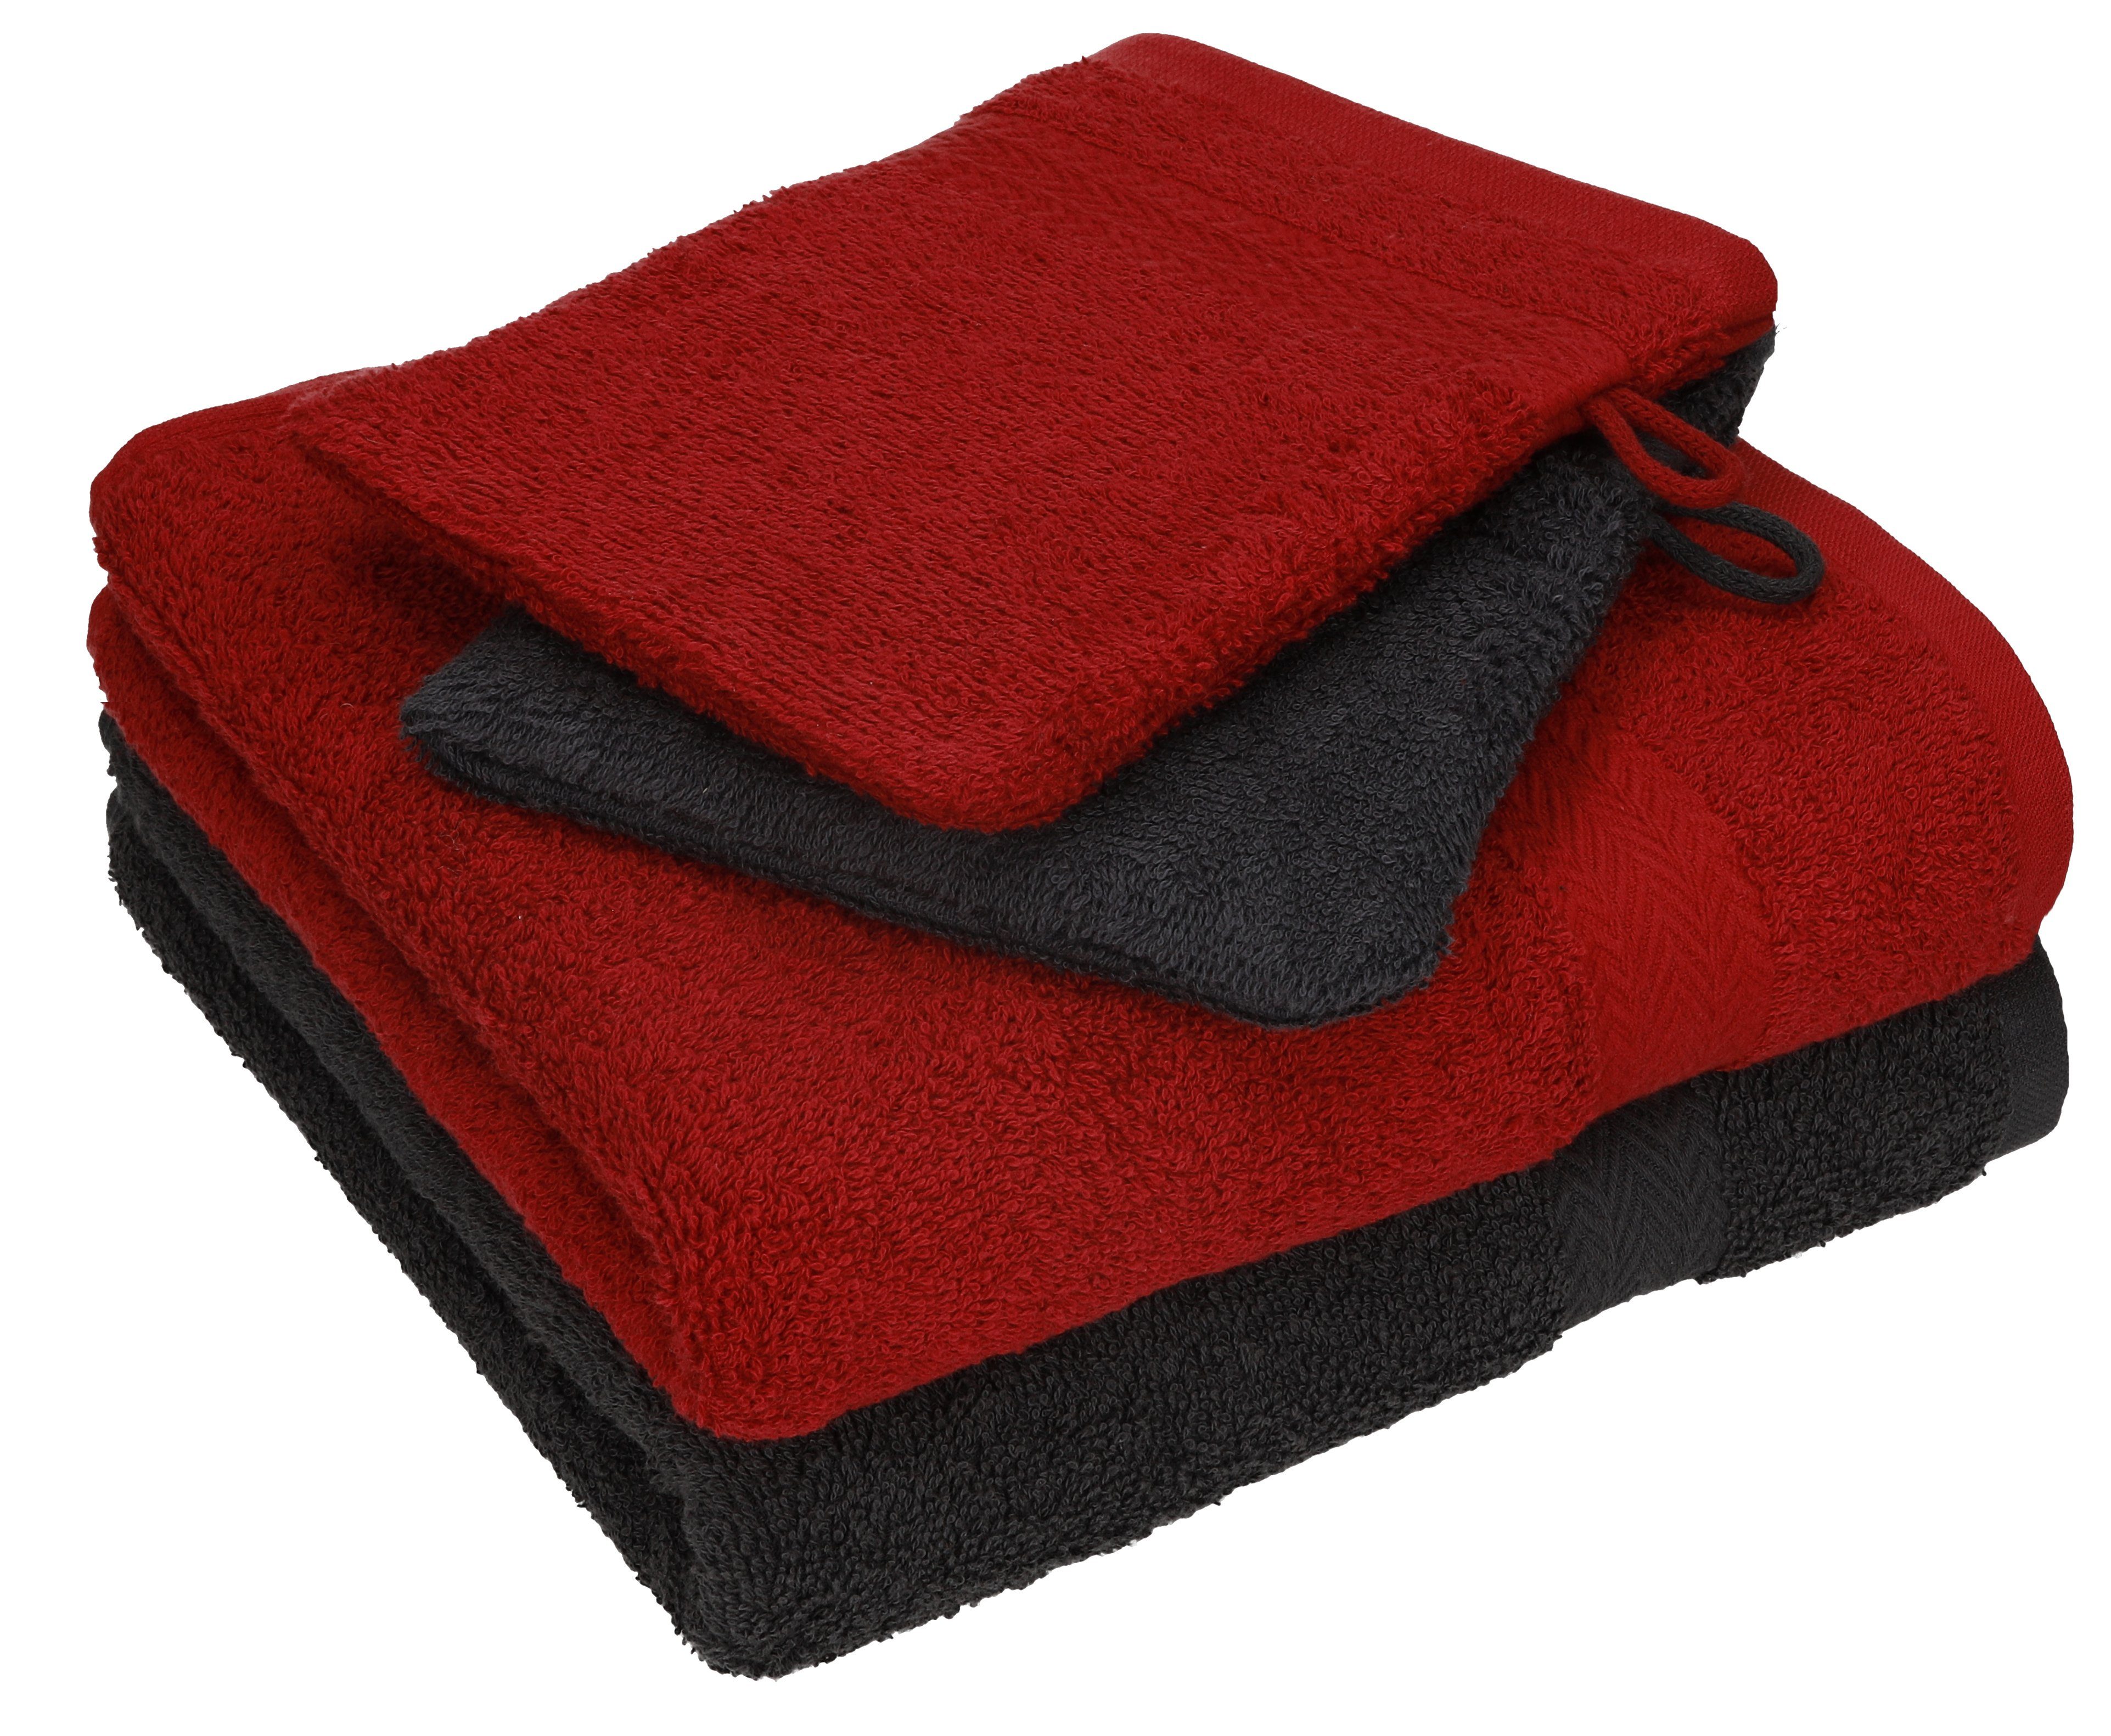 Betz Handtuch Set 4 tlg. Handtuch Set HAPPY Pack 100% Baumwolle 2 Handtücher 2 Waschhandschuhe, 100% Baumwolle graphit grau - dunkelrot